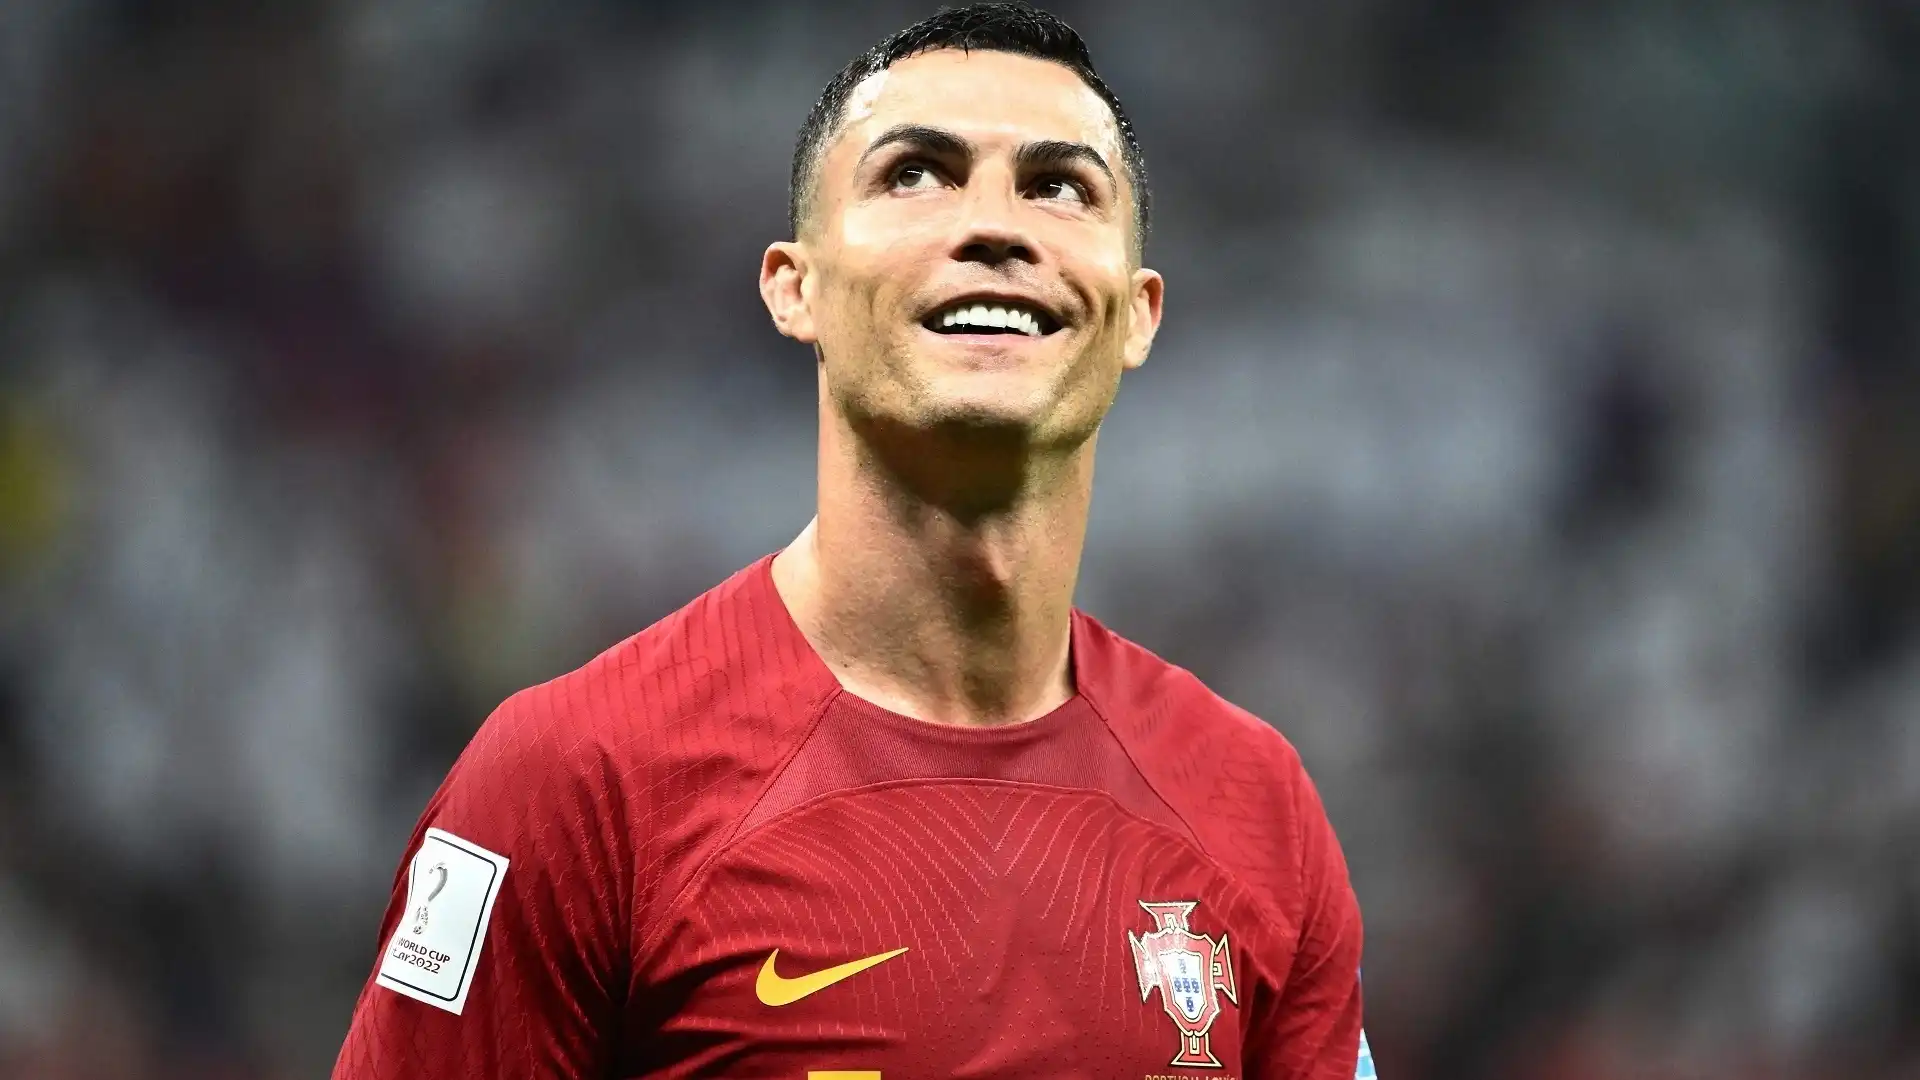 Cristiano Ronaldo (Portogallo): patrimonio complessivo 600 milioni di dollari. Uno dei giocatori che ha segnato gli ultimi vent'anni di calcio, CR7 ha il record di gol segnati in partite ufficiali. Ora gioca in Arabia Saudita